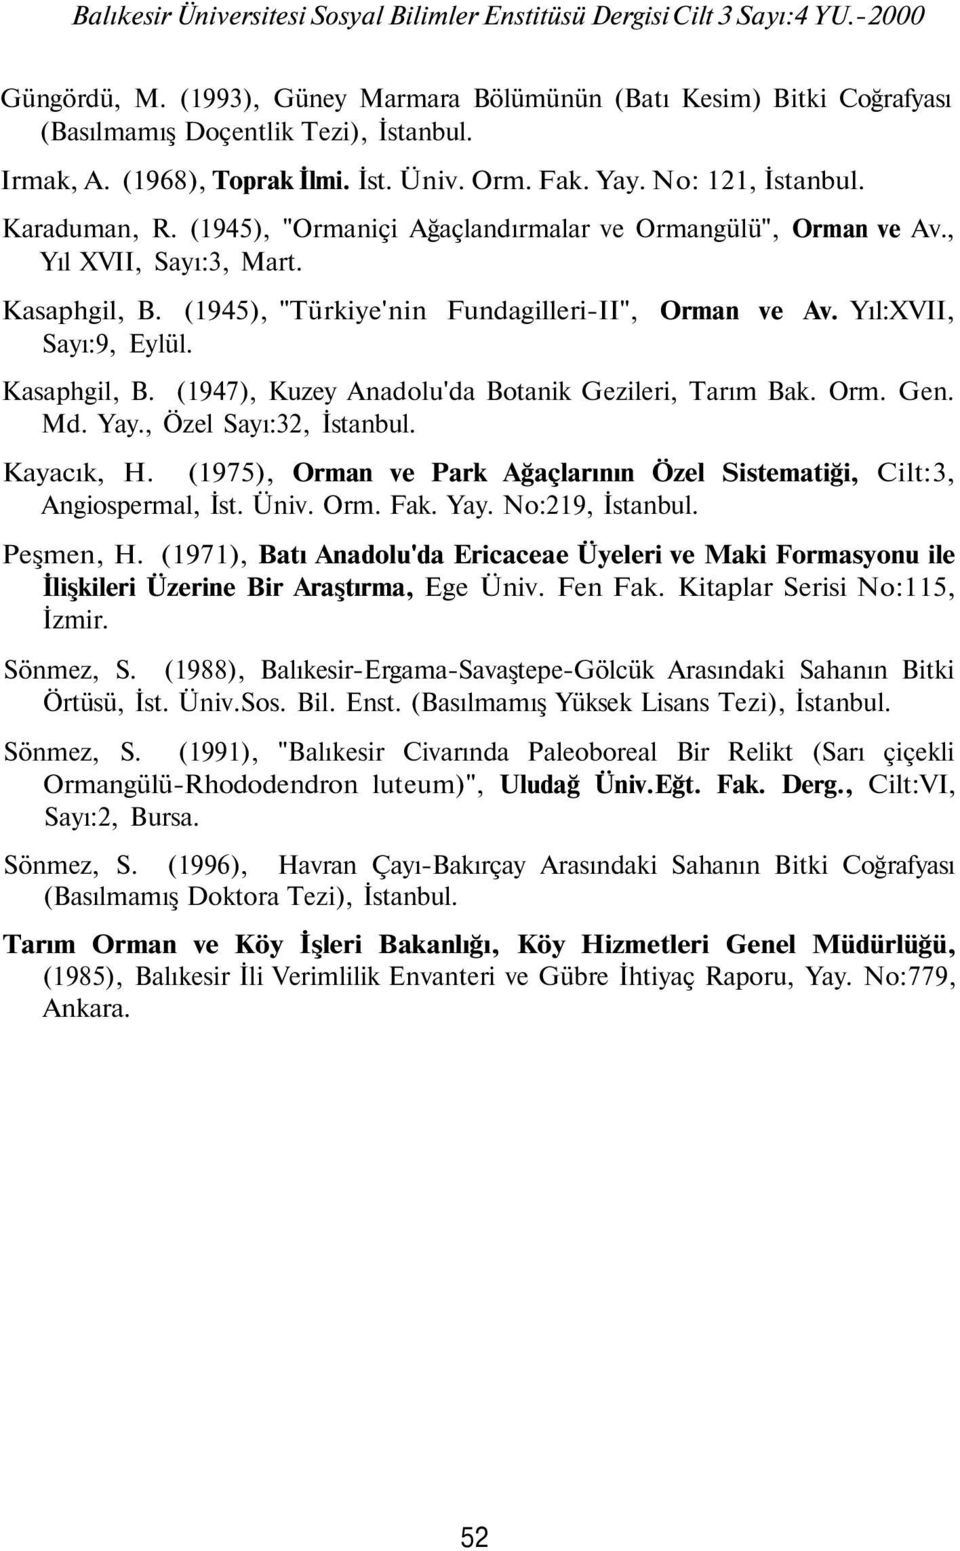 (1945), "Türkiye'nin Fundagilleri-II", Orman ve Av. Yıl:XVII, Sayı:9, Eylül. Kasaphgil, B. (1947), Kuzey Anadolu'da Botanik Gezileri, Tarım Bak. Orm. Gen. Md. Yay., Özel Sayı:32, İstanbul. Kayacık, H.